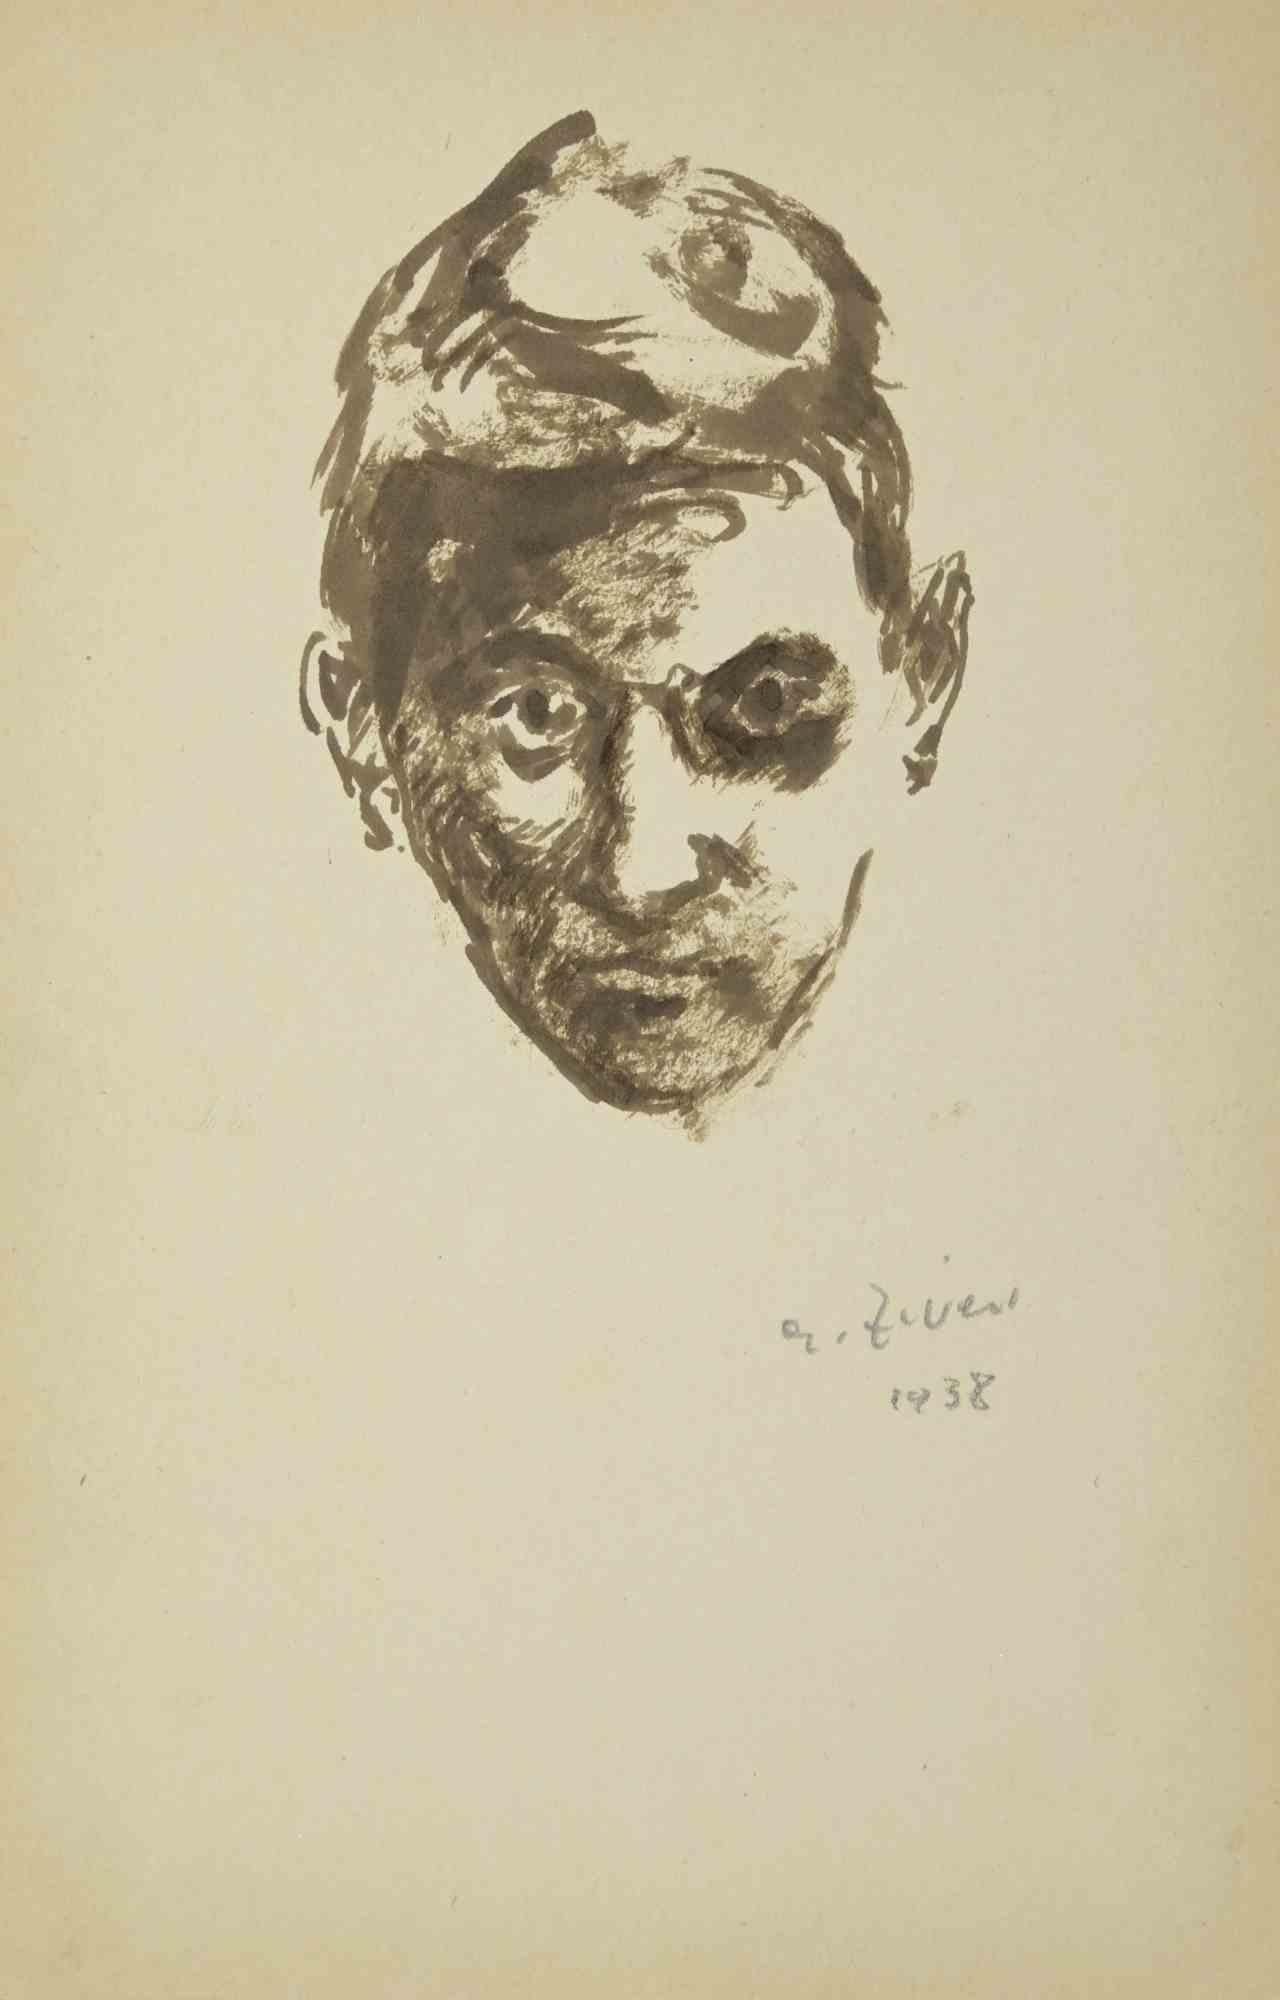 Das Porträt ist eine Zeichnung von Alberto Ziveri aus dem Jahr 1938

Tusche und Aquarell auf Papier.

Handsigniert.

In gutem Zustand mit leichten Stockflecken.

Das Kunstwerk wird durch geschickte Striche meisterhaft dargestellt.

Alberto Ziveri